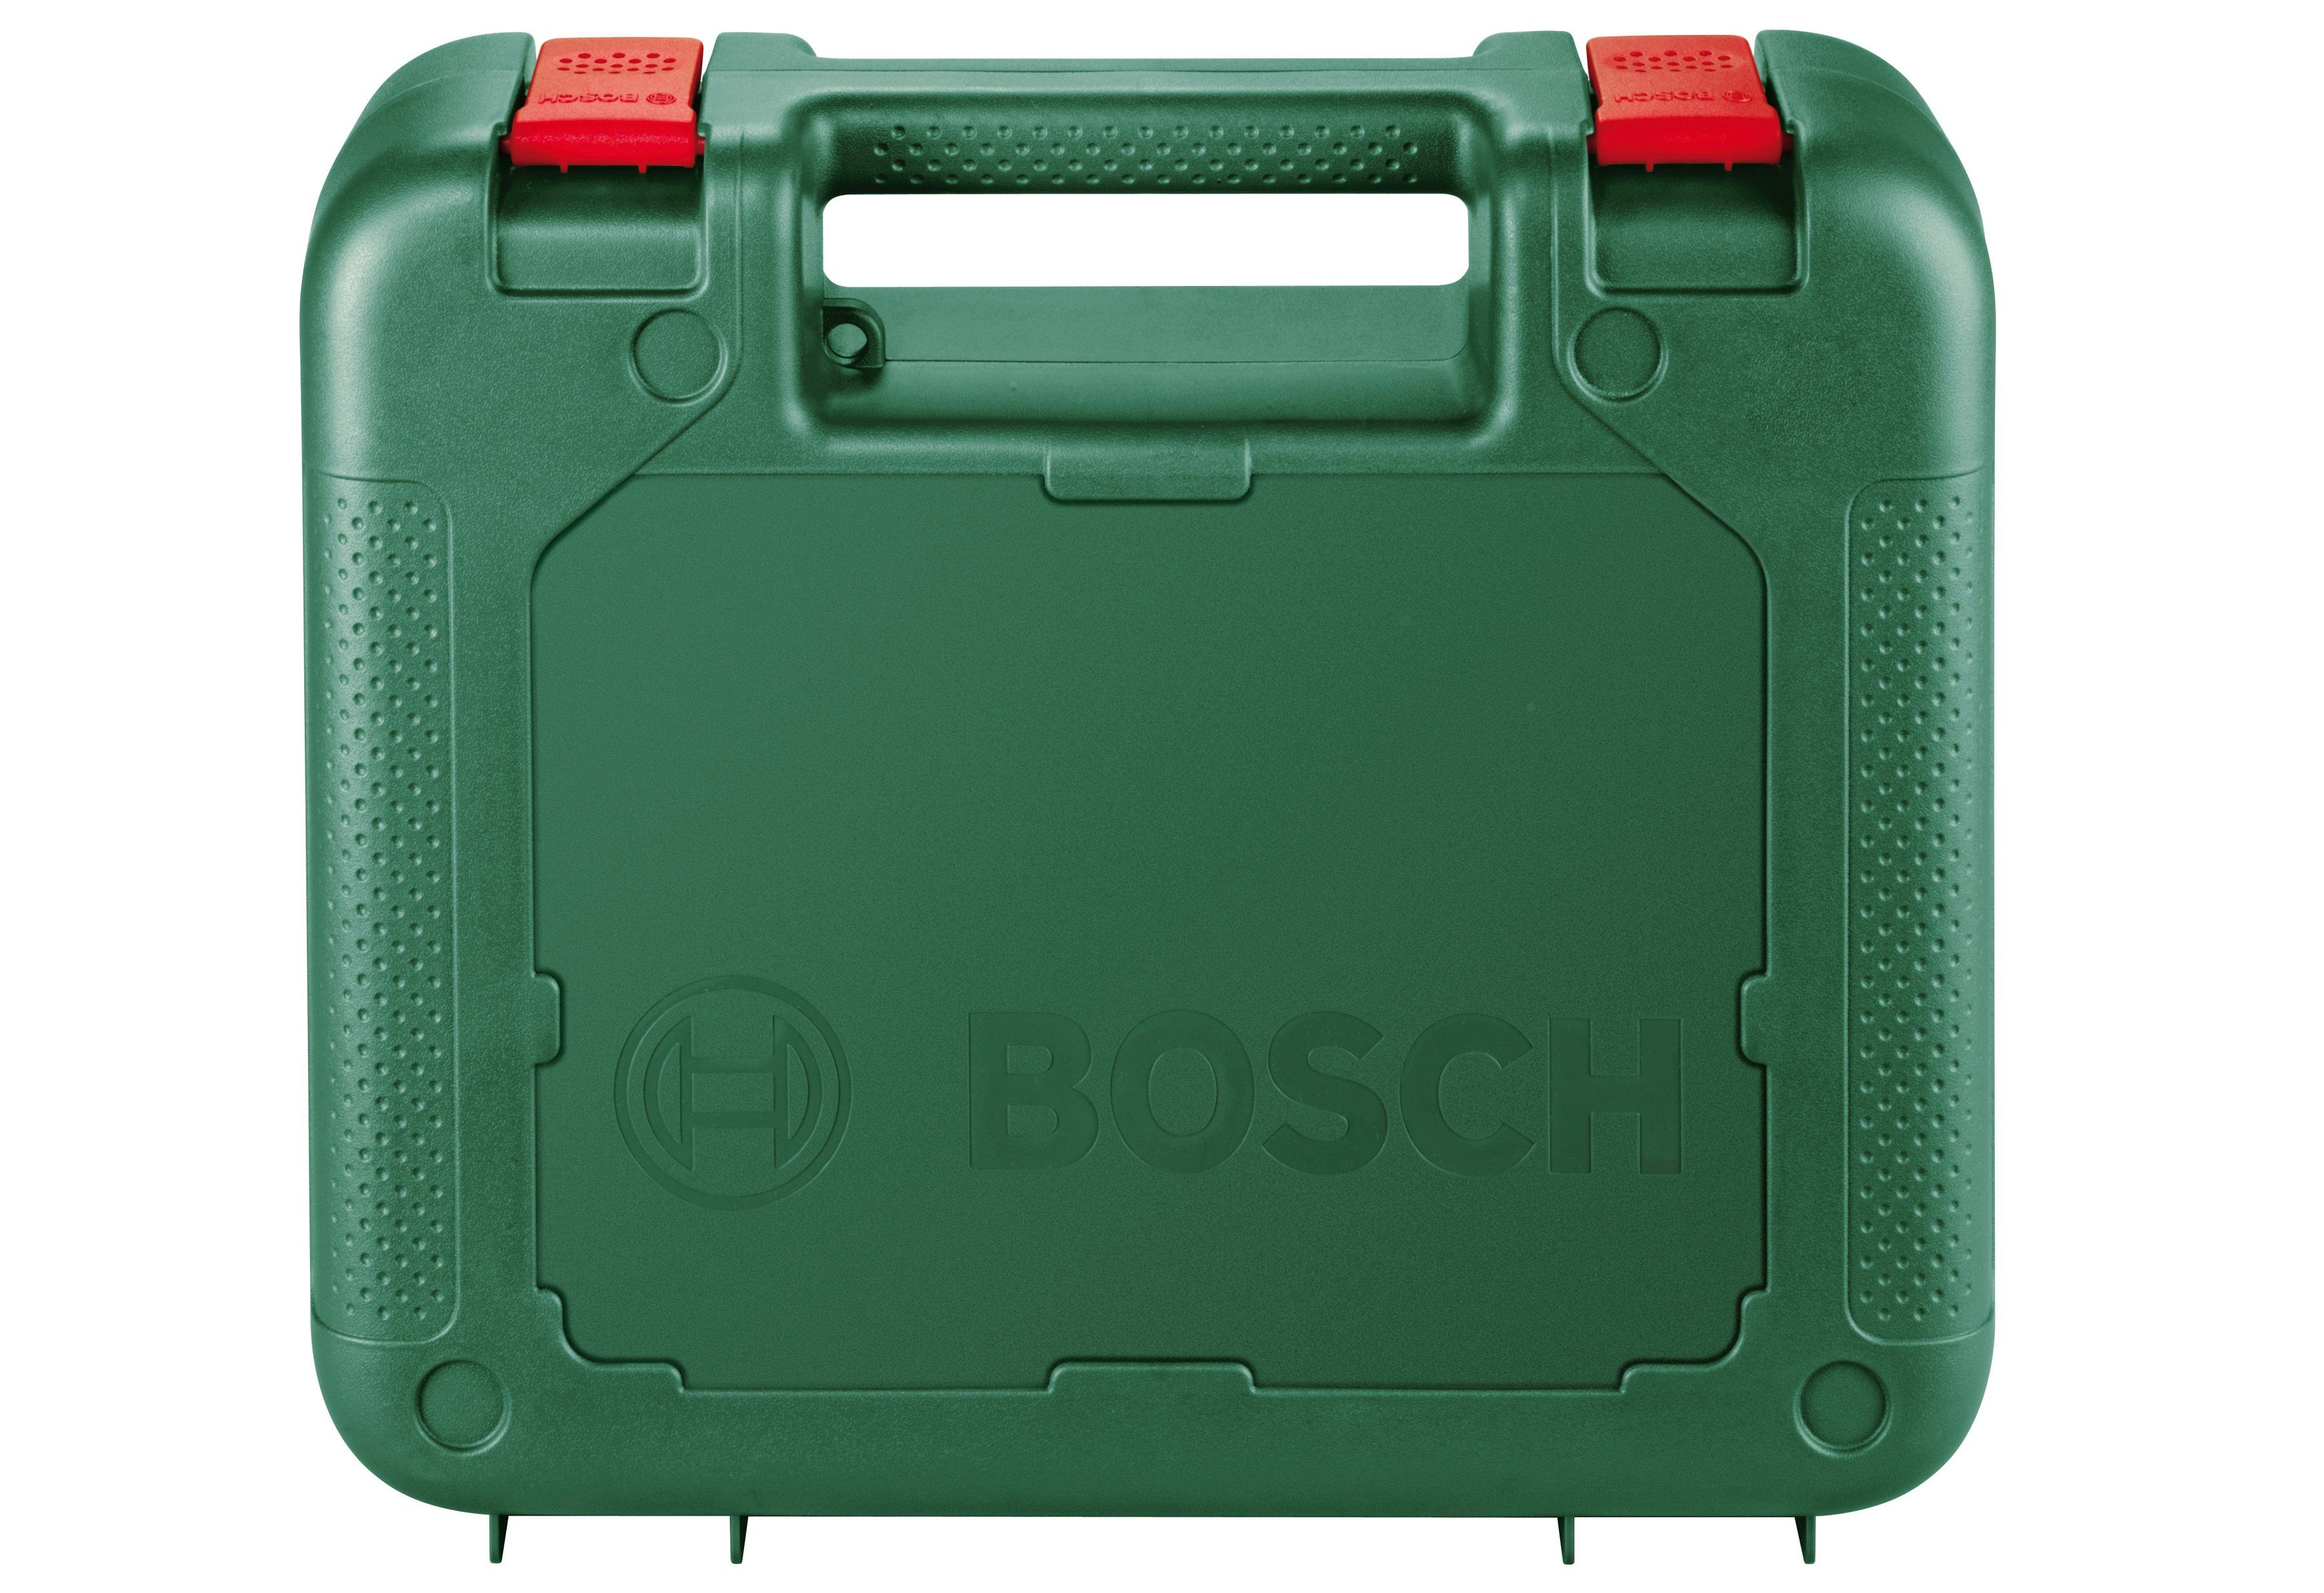 Bosch PST 900 Stichsäge PEL, Garden 620 & Home W